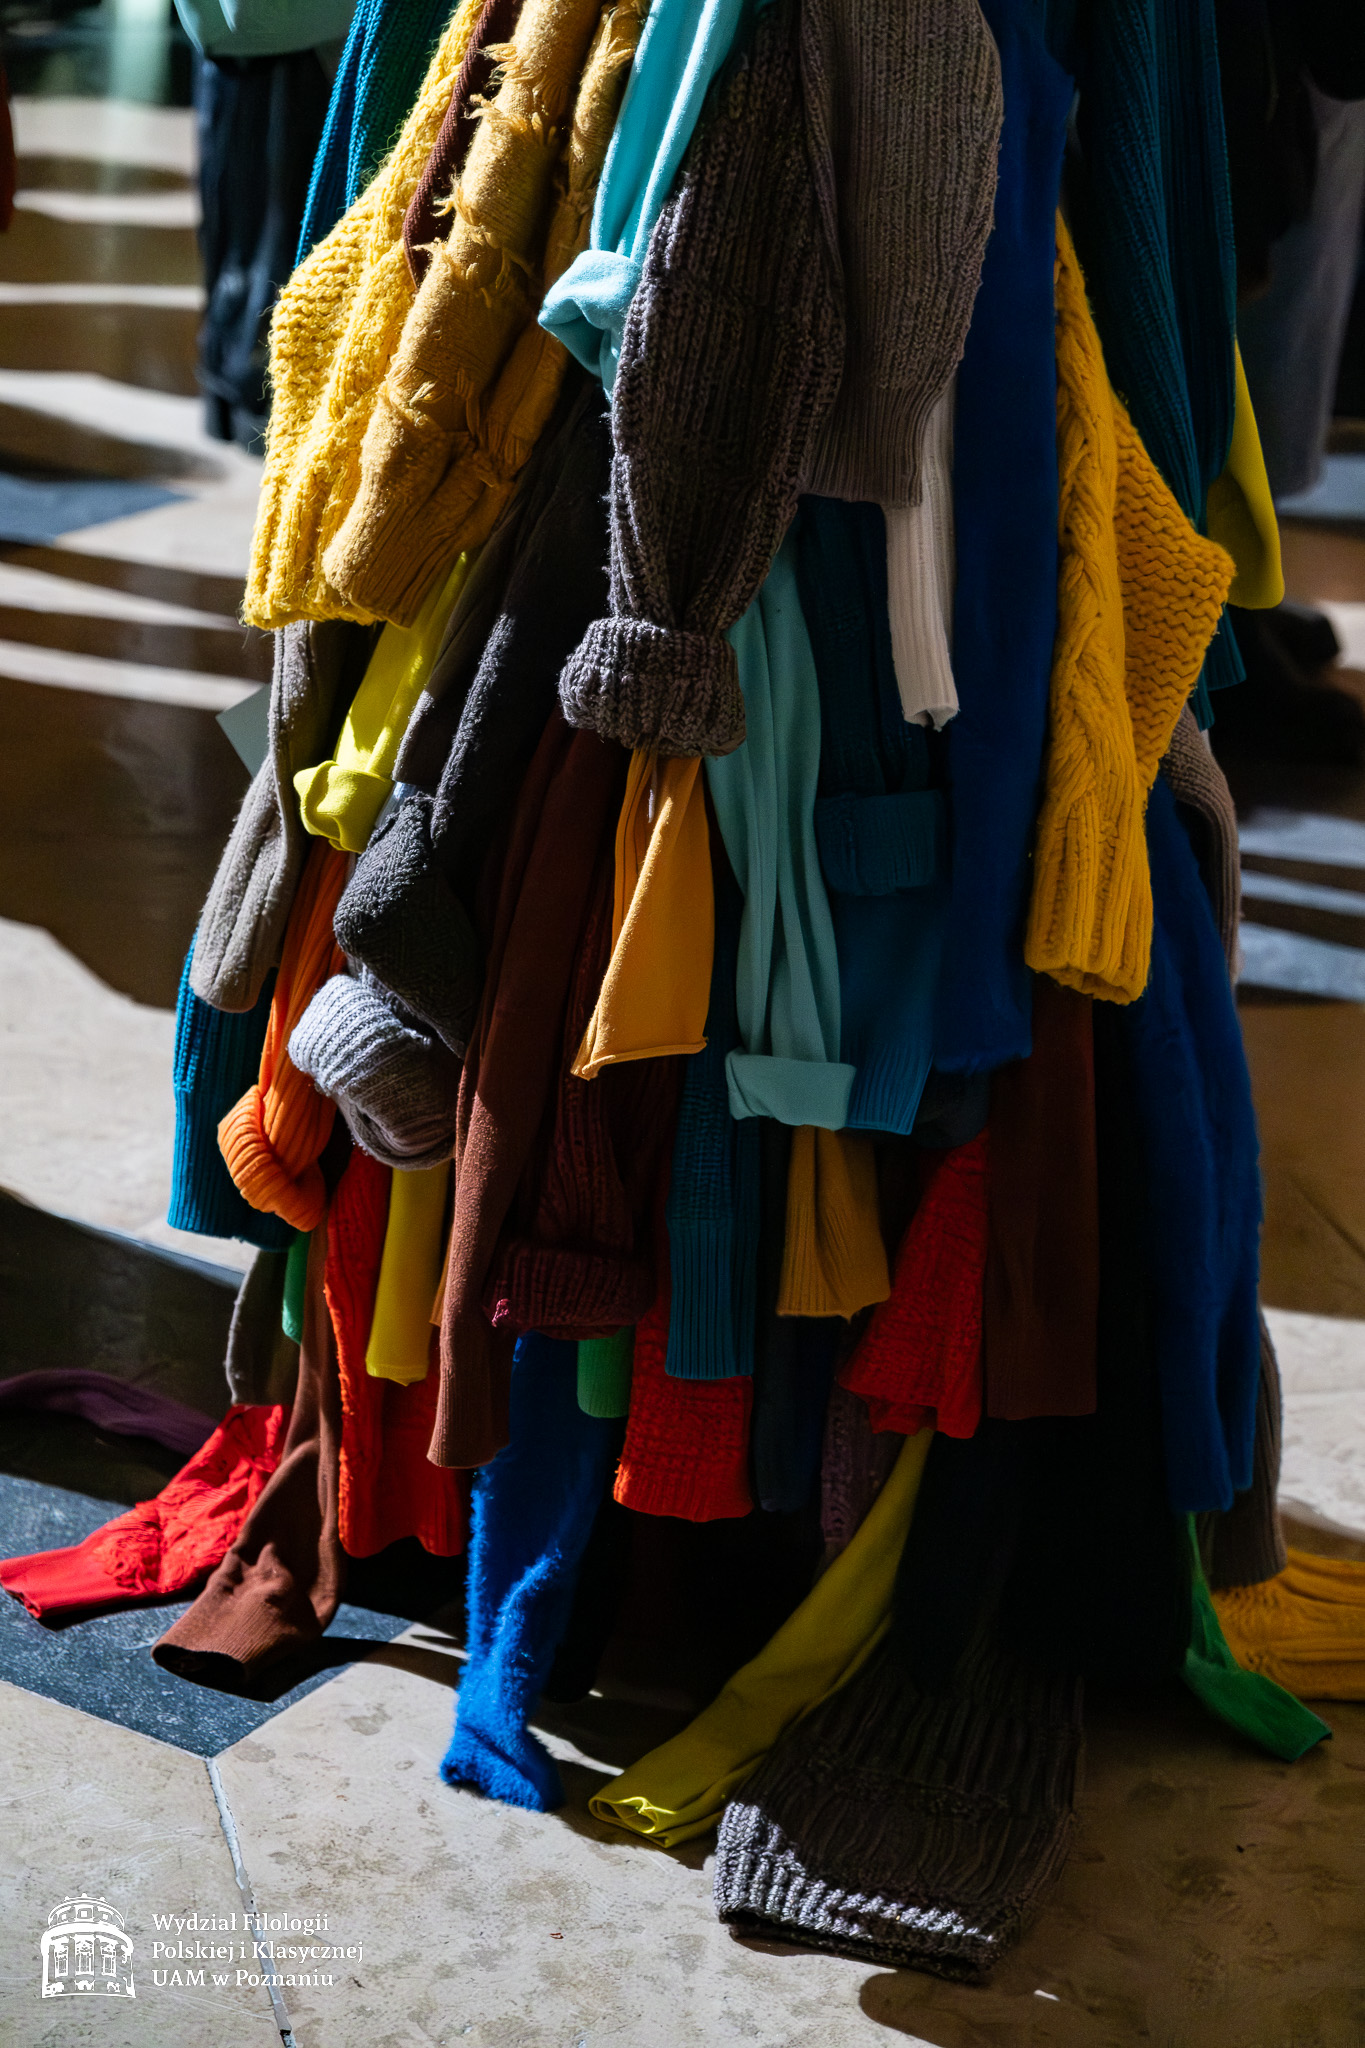 Detal z jednego ze strojów pokazanych na wystawie - dół sukni uszytej z wielu rękawów różnokolorowych dzierganych swetrów.